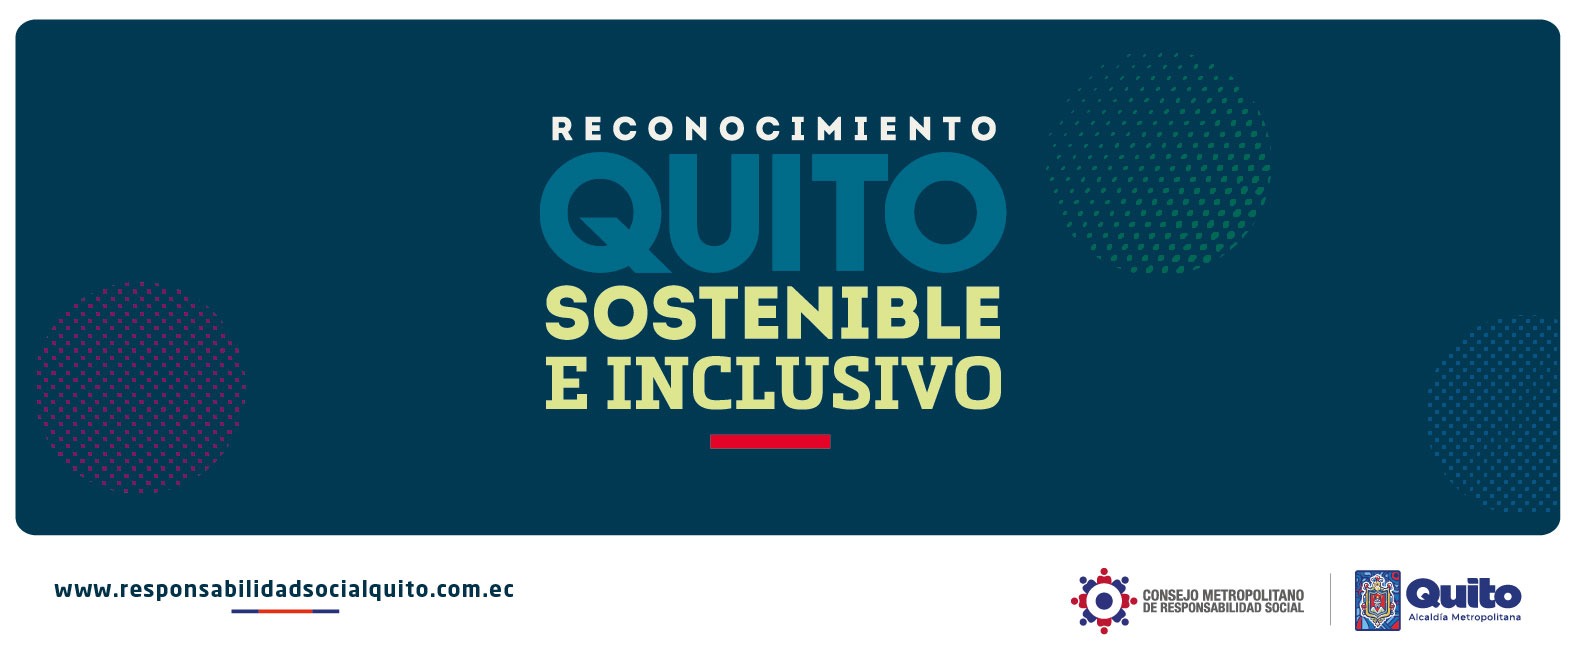 Reconocimiento Quito sostenible